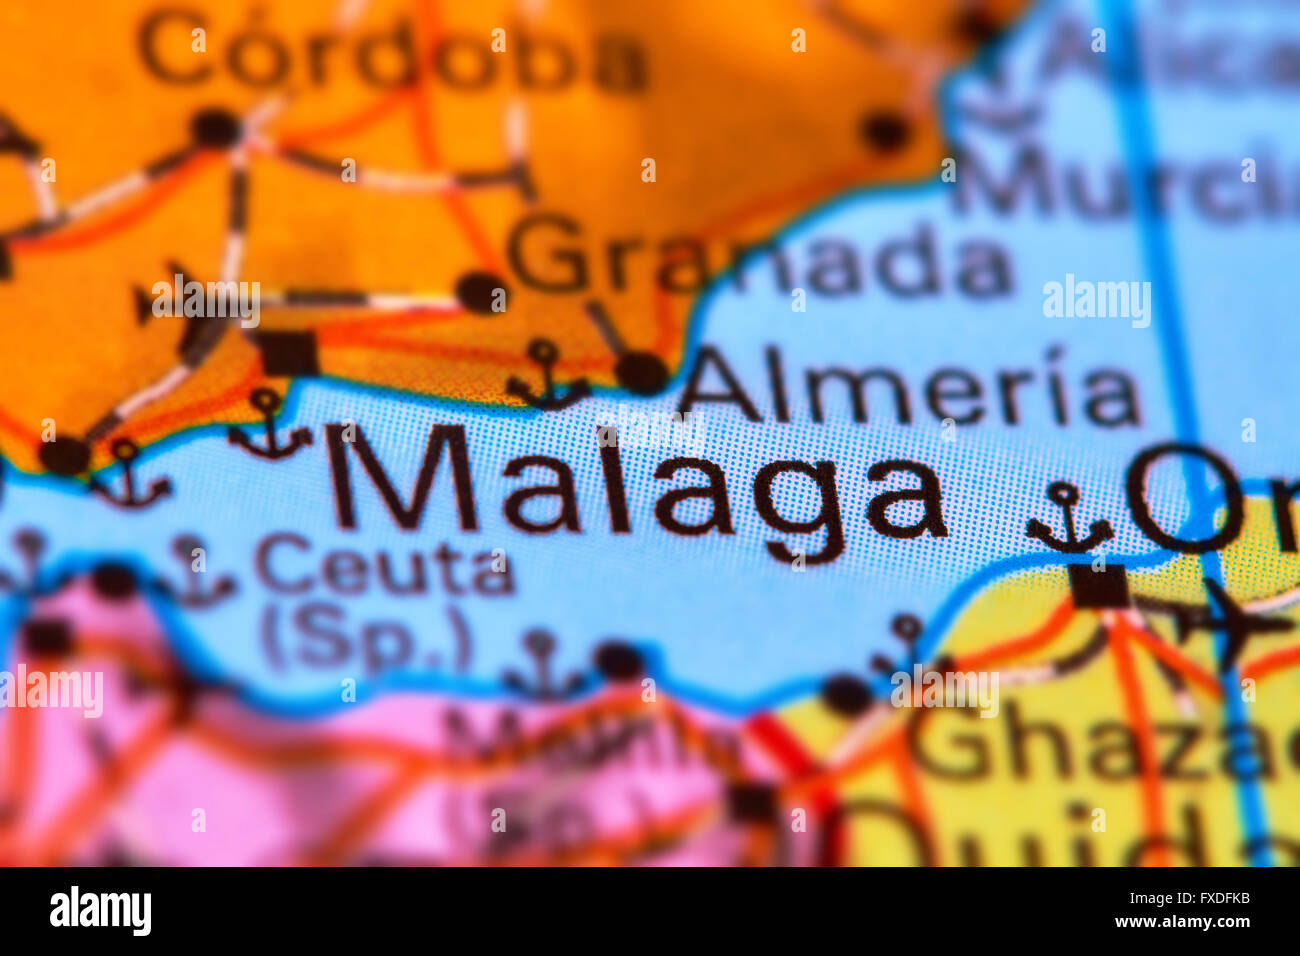 Malaga, città in Spagna, nella penisola iberica sulla mappa del mondo Foto Stock